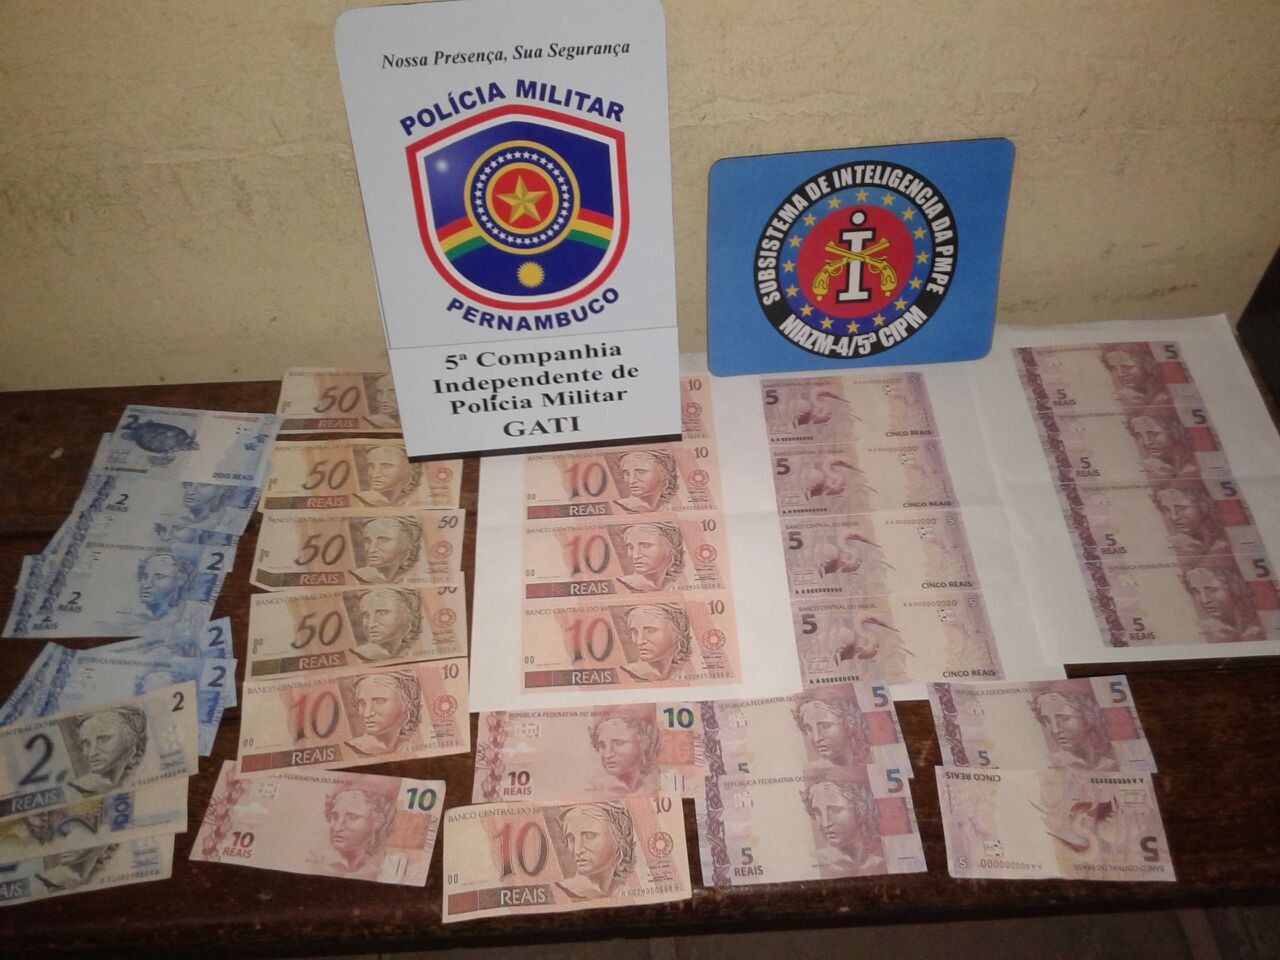 Dinheiro falso apreendido em Gravatá, Pernambuco (Foto: Divulgação/ Polícia Militar)